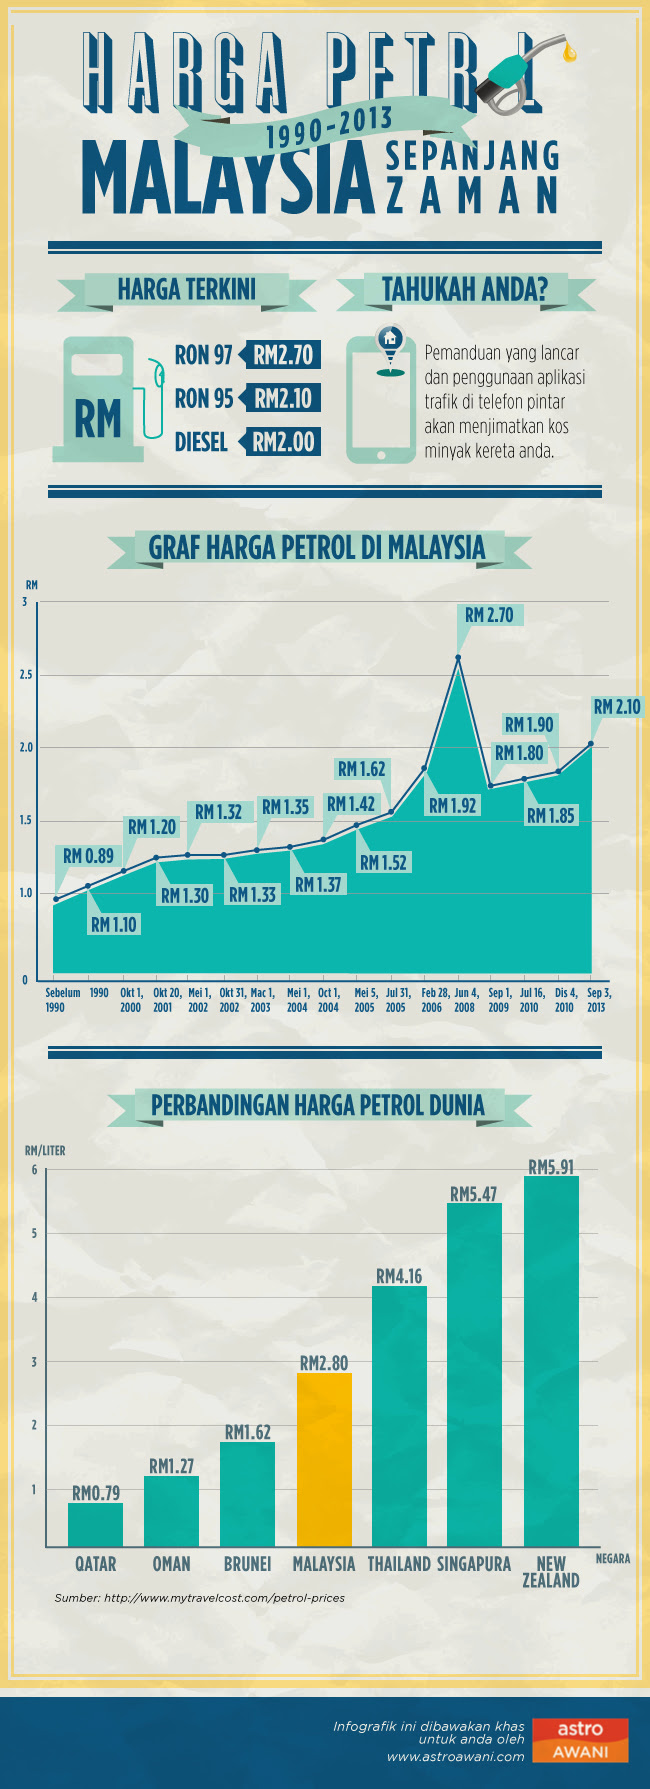 harga minyak semasa malaysia